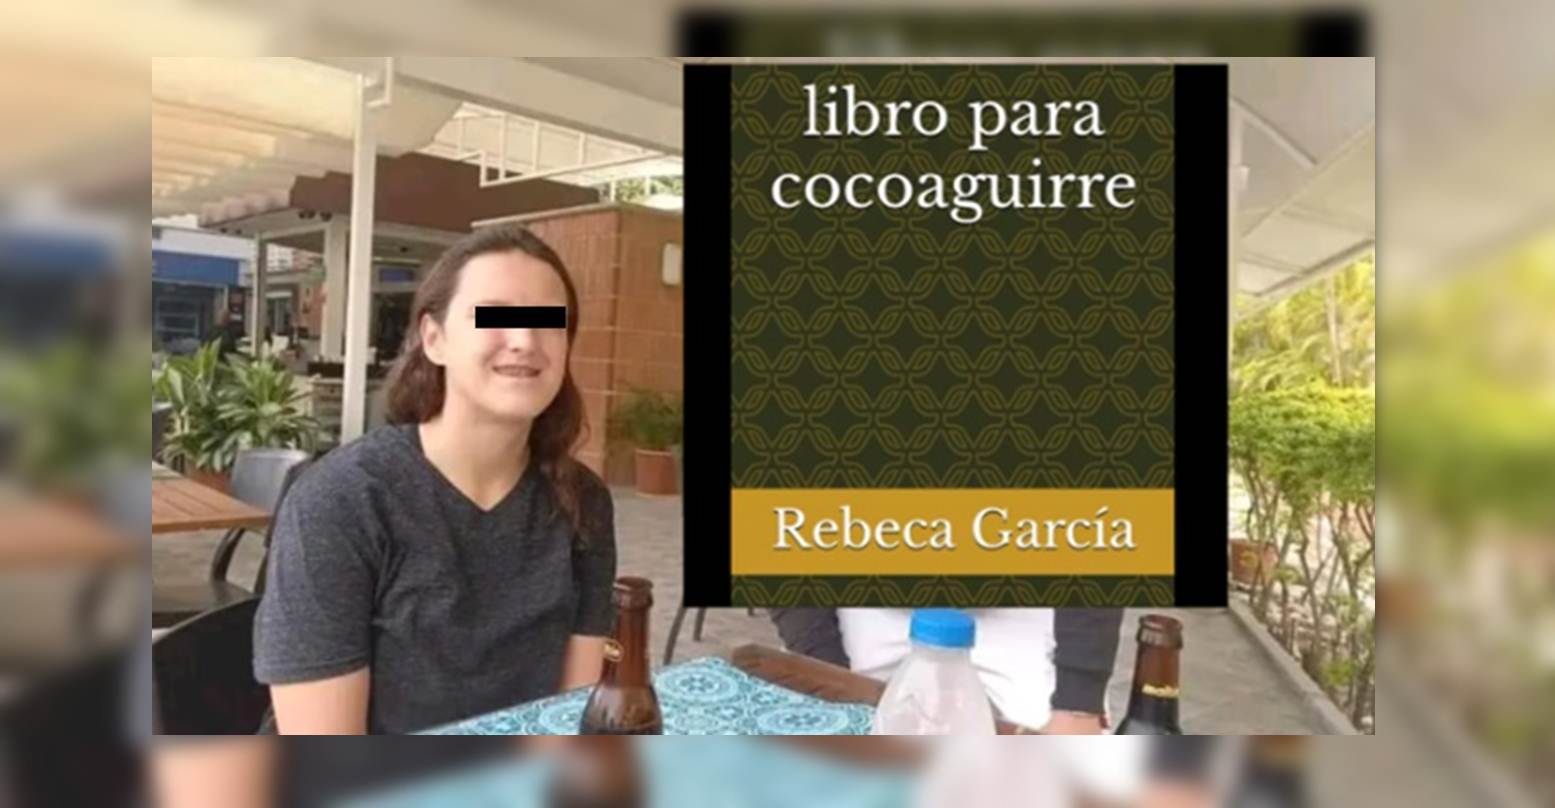 ¡LO ACTUALIZA CONSTANTEMENTE! Rebeca García confiesa en libro su acoso sistemático a mujeres durante varios años